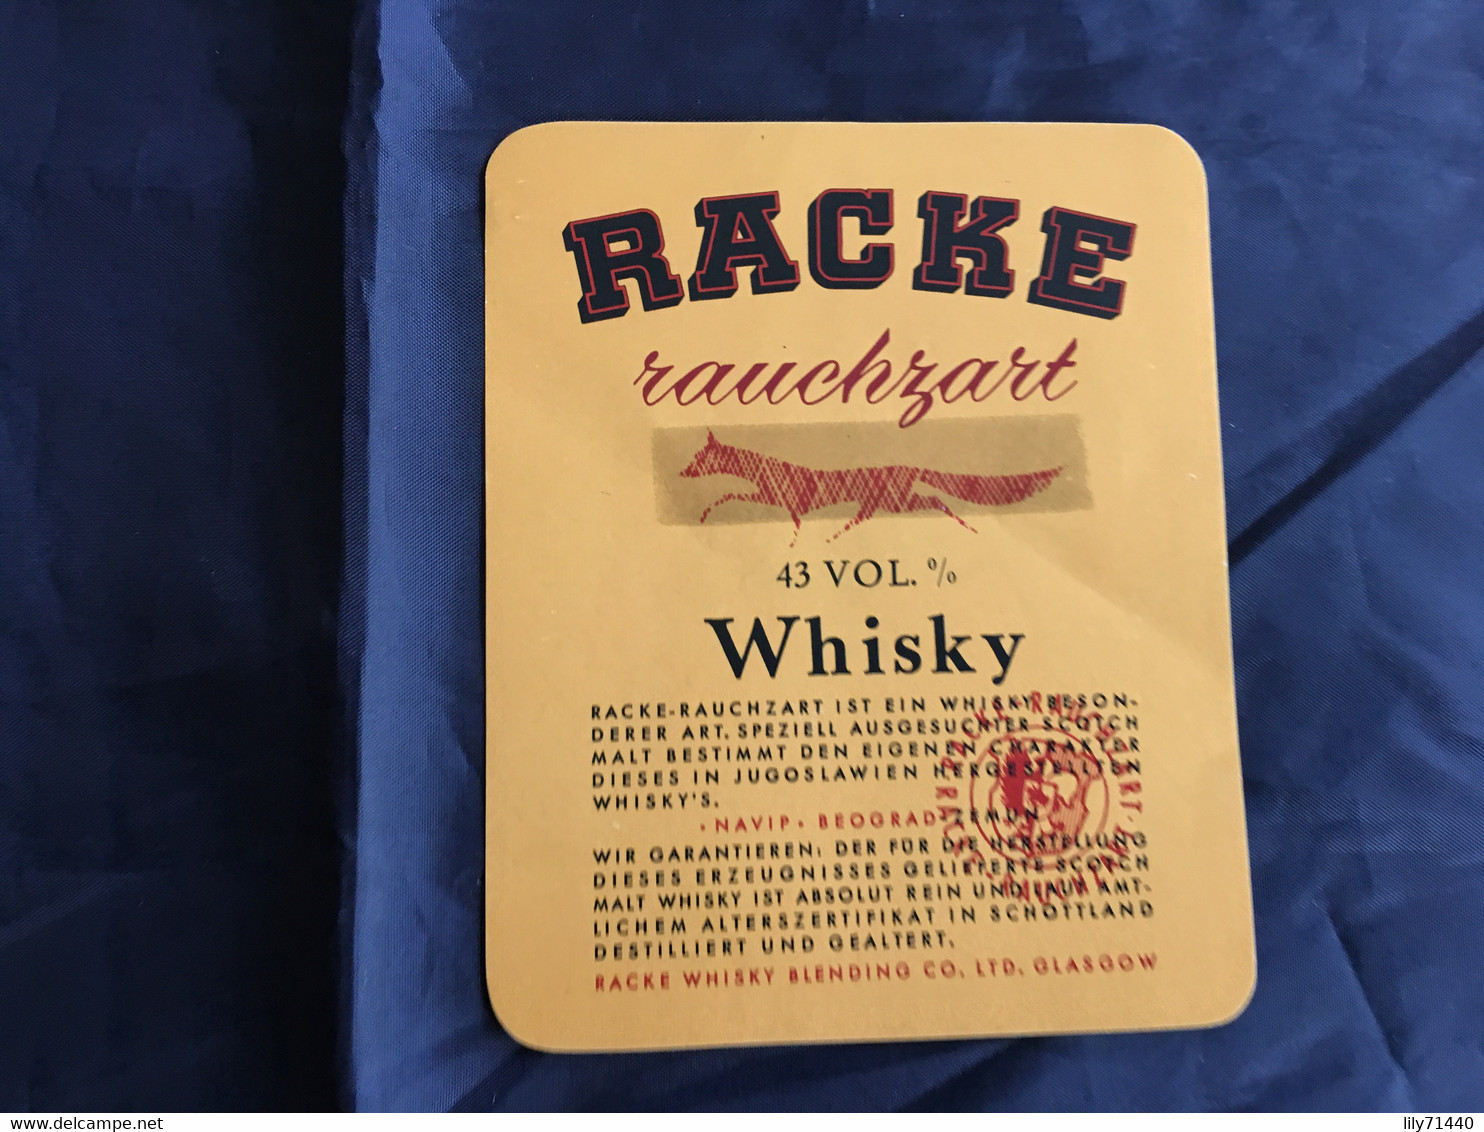 Ancienne étiquette De Whisky Old Label - Whisky